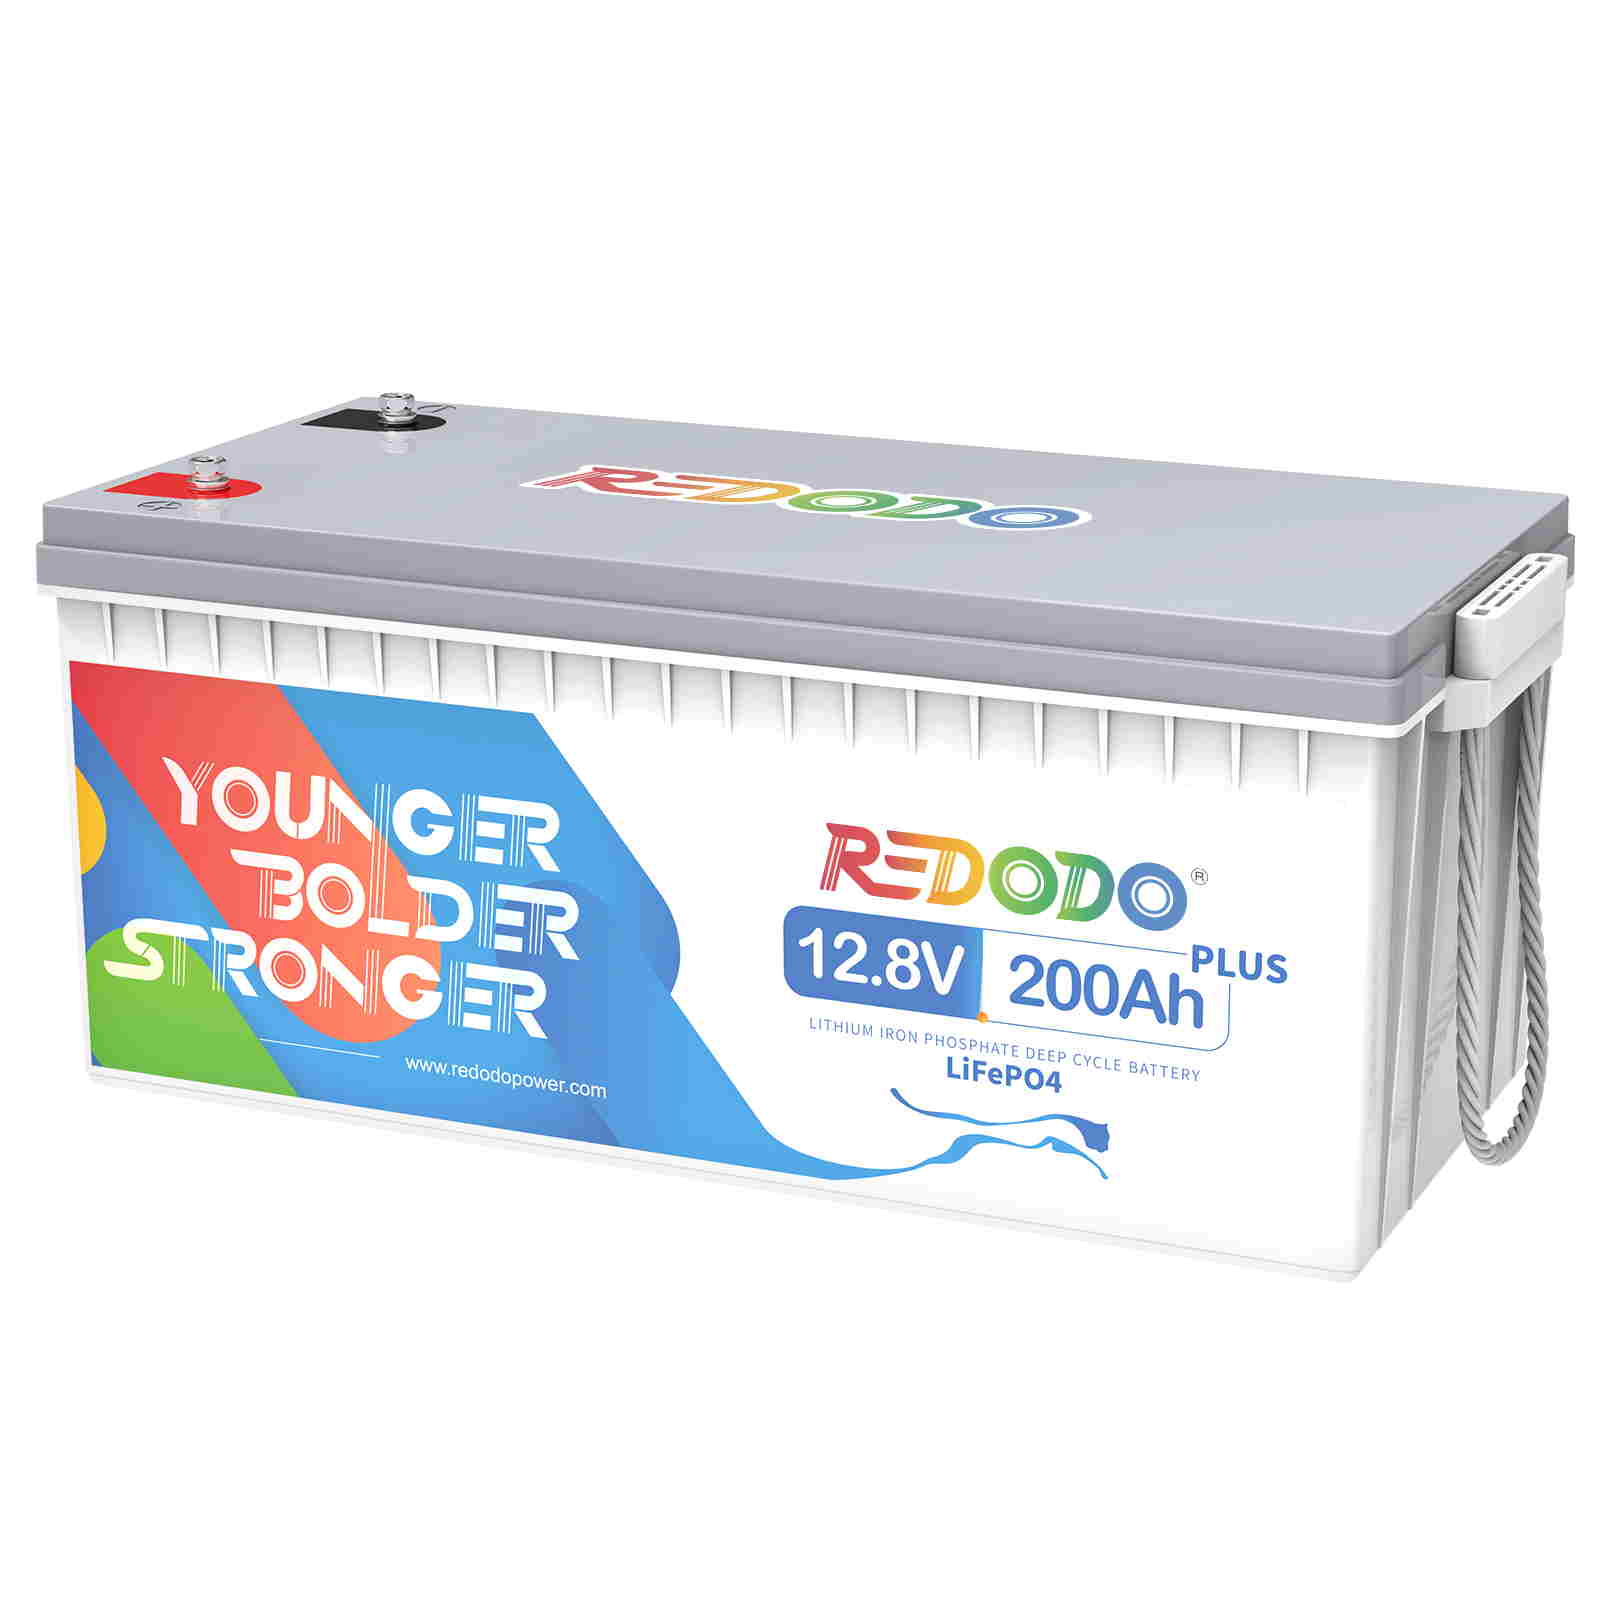 Redodo Power 200ah Plus lithium battery-1.jpg__PID:42fd2aab-eab7-4f5a-ab90-7a6cedc13d36